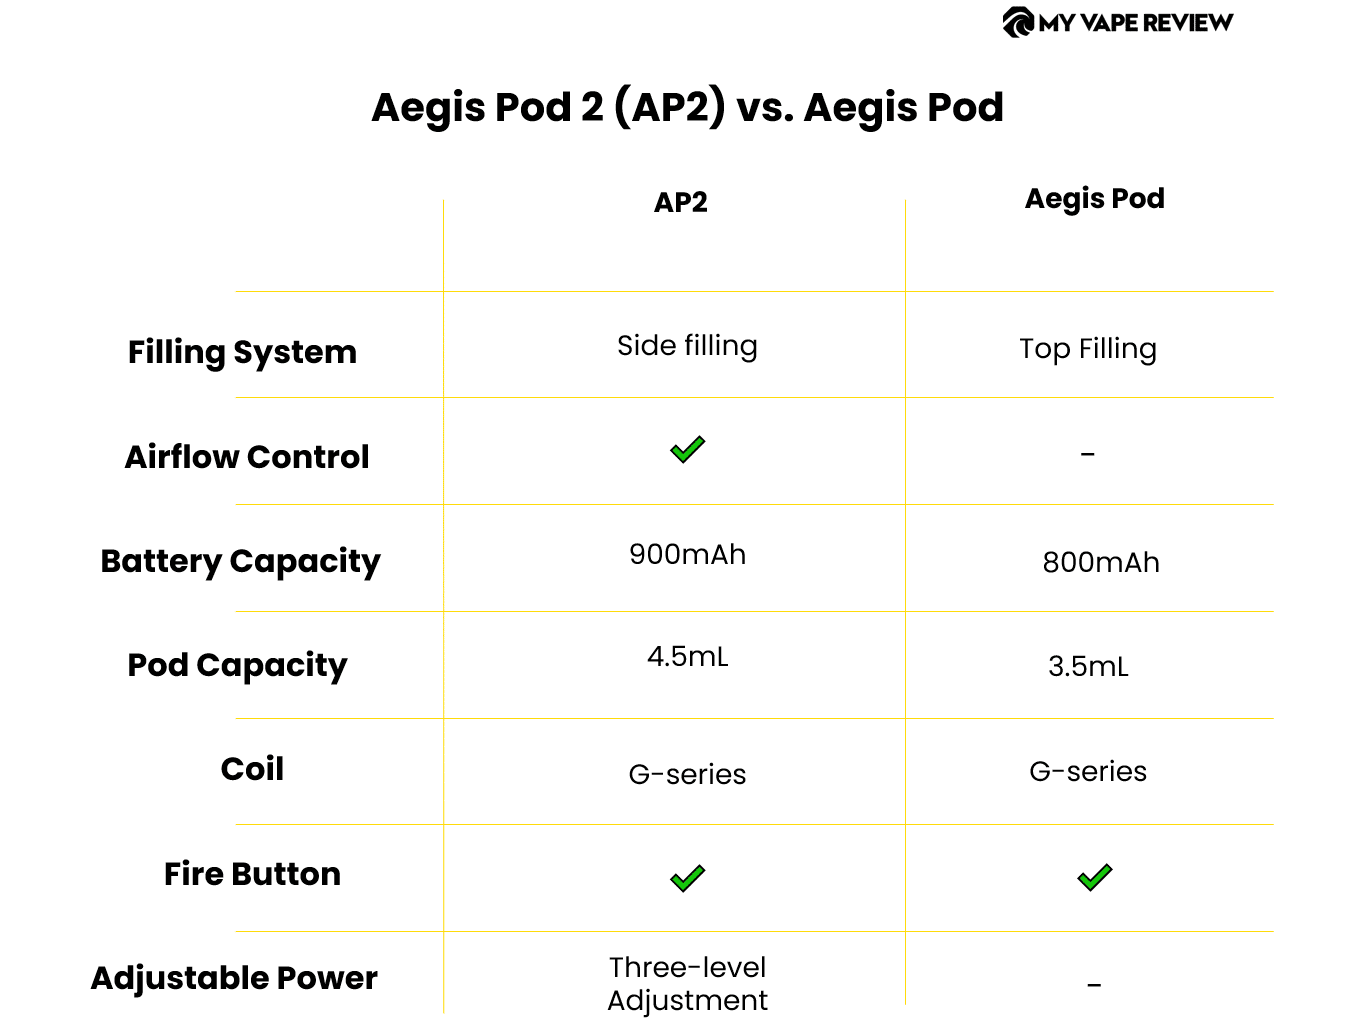 ap2 이지스팟과 비교